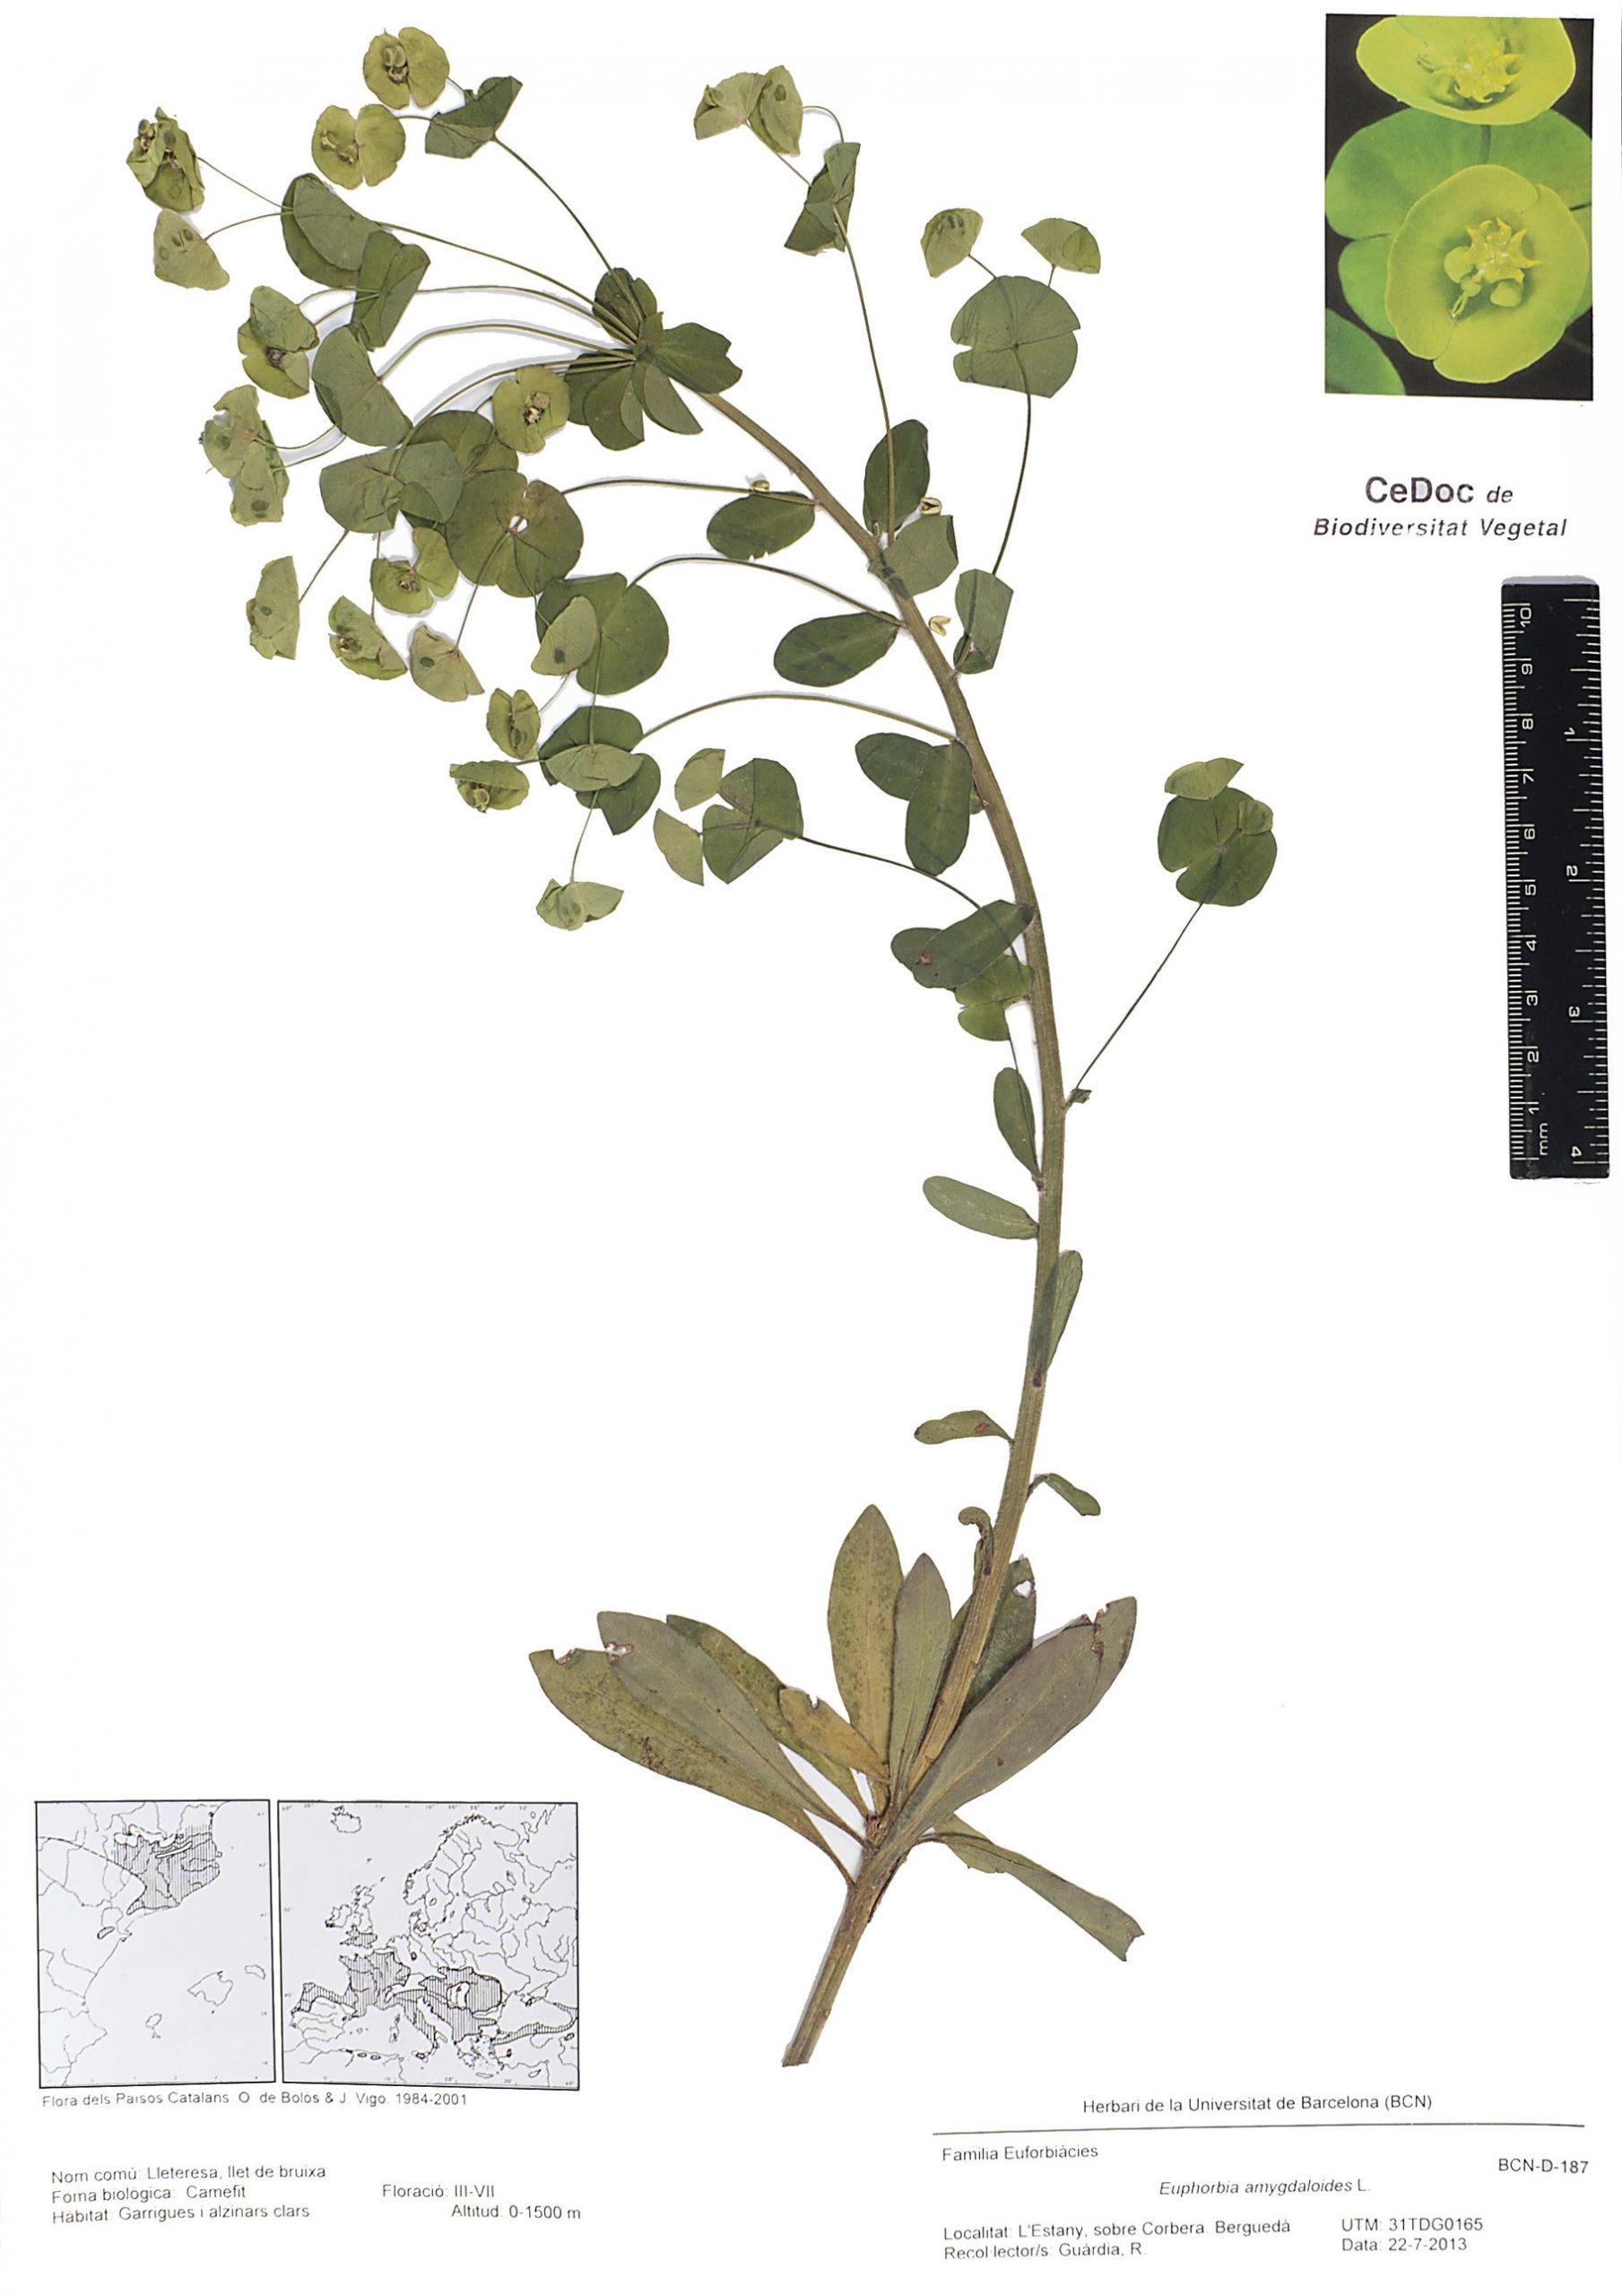 Euphorbia amygdaloides L. (Lleteresa, Llet de bruixa)